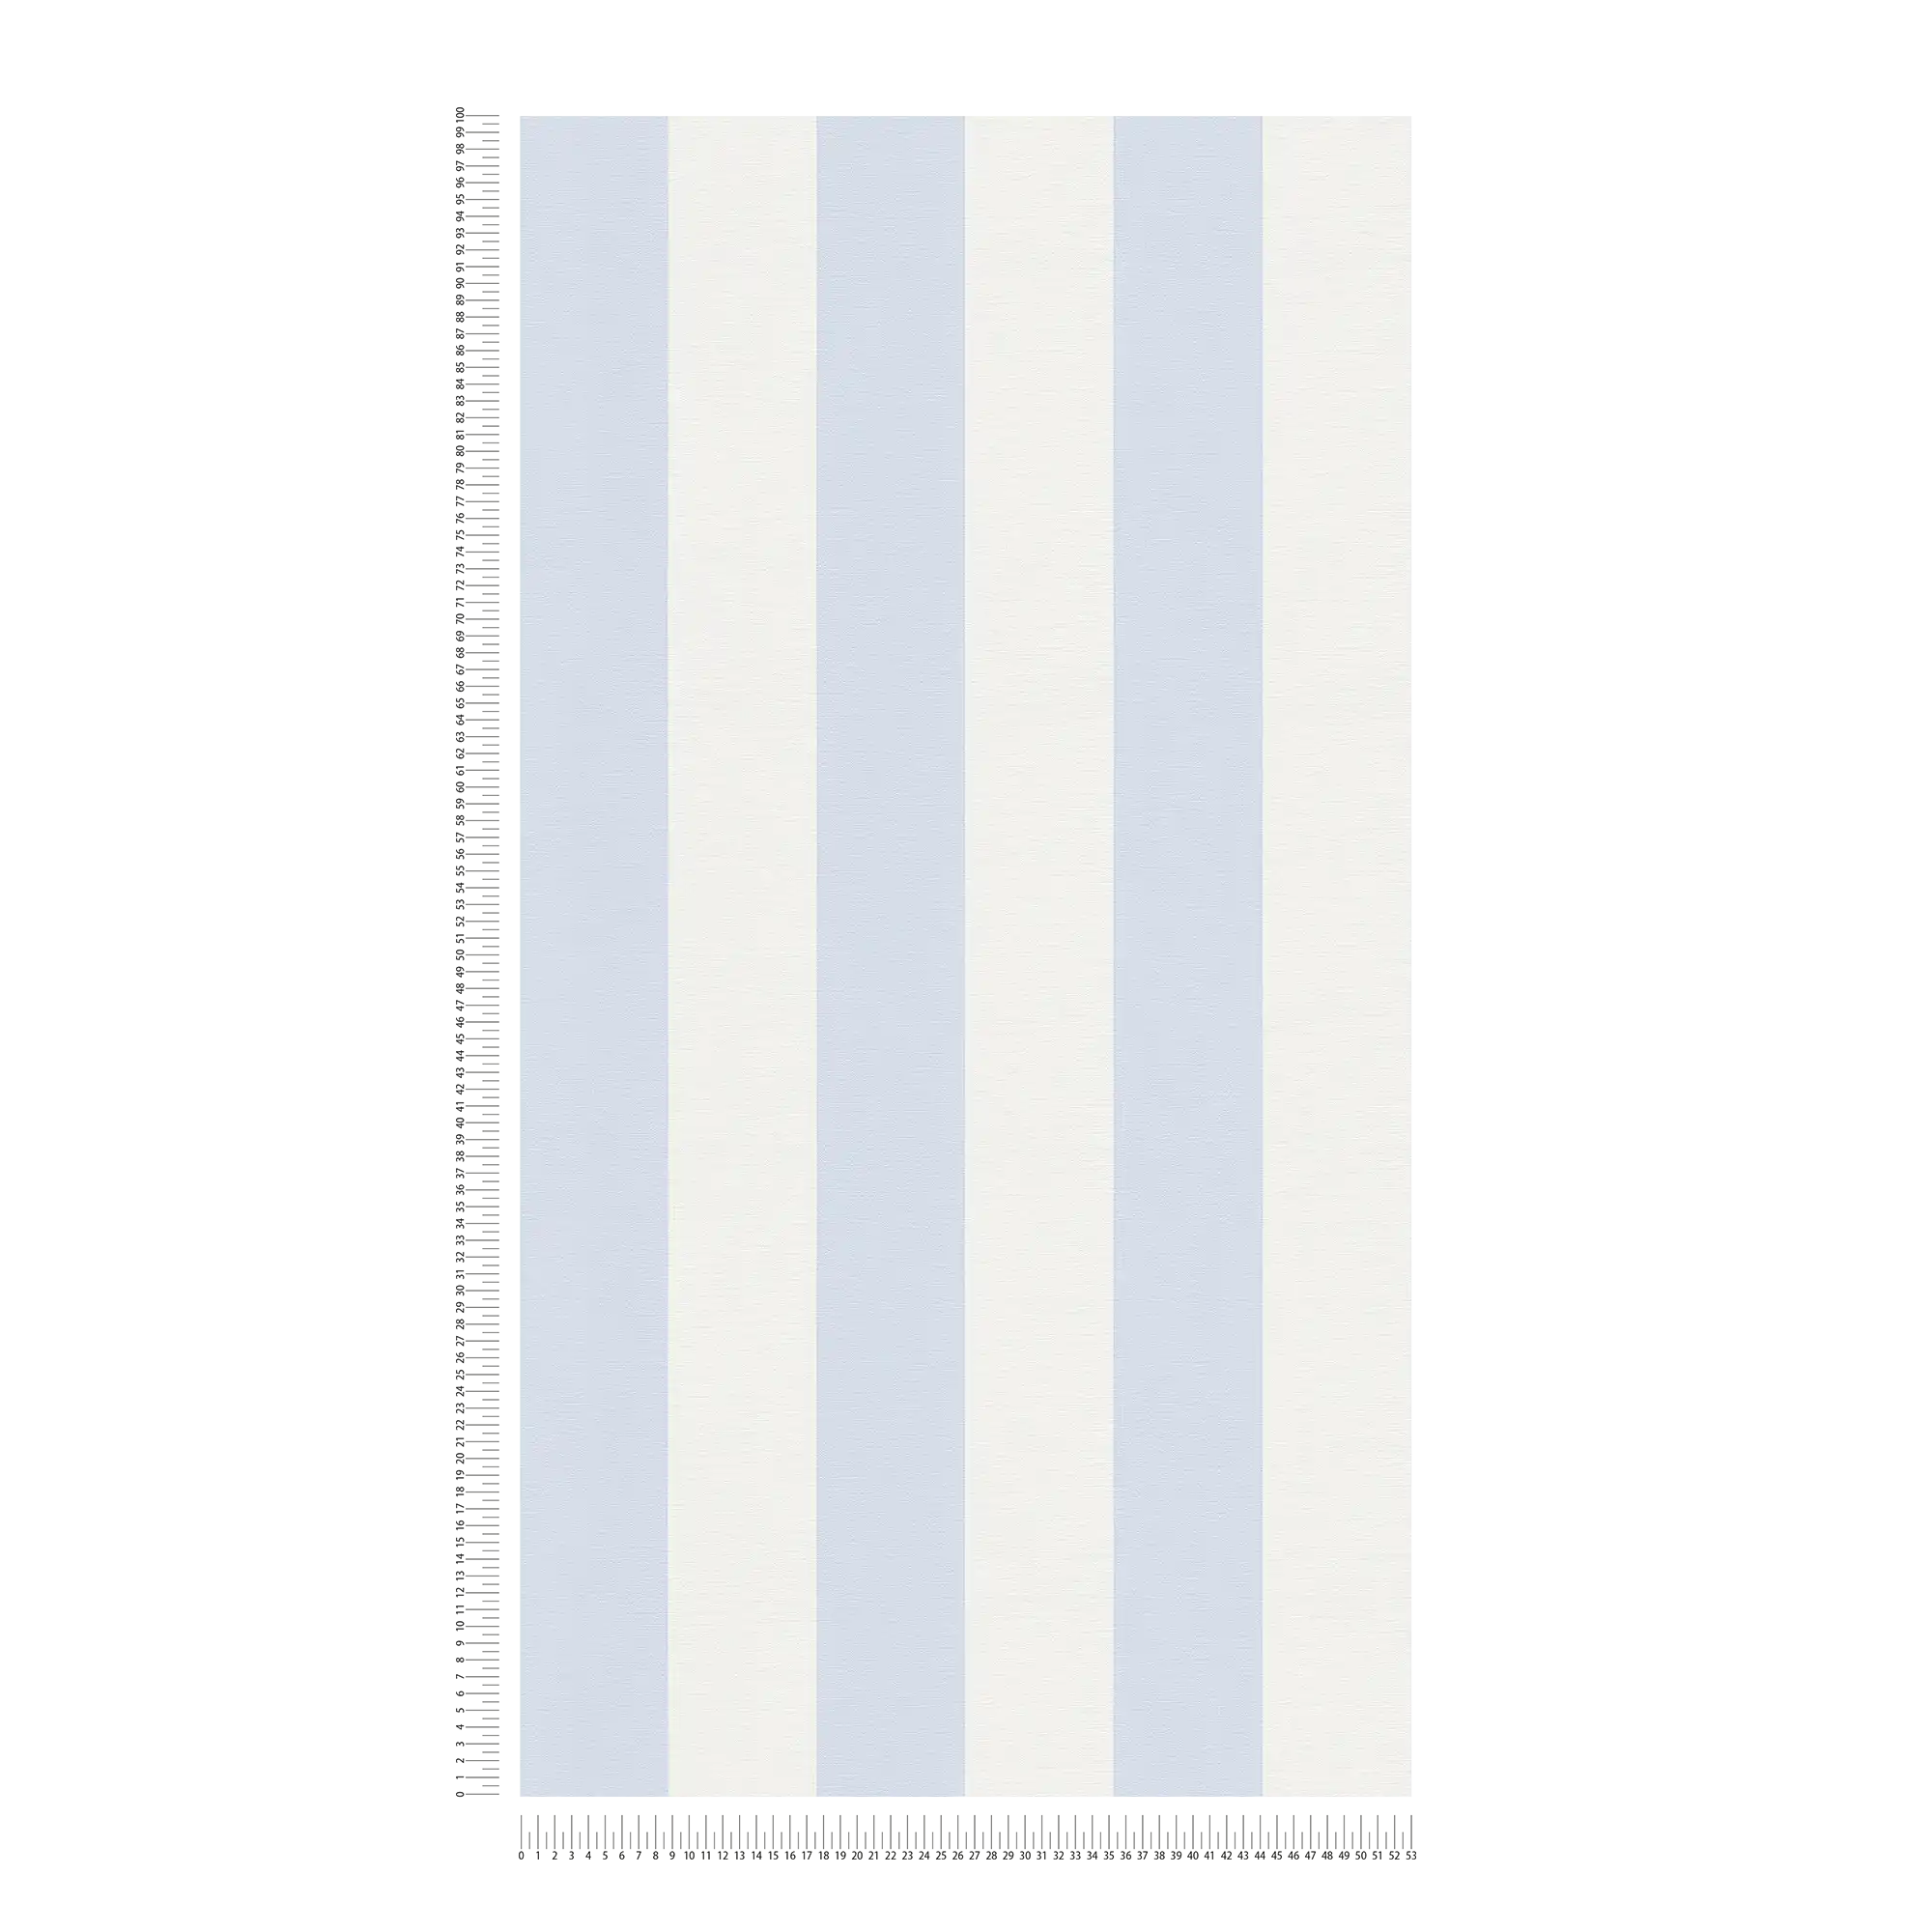             Carta da parati a righe a blocchi con aspetto tessile per un design giovane - blu, bianco
        